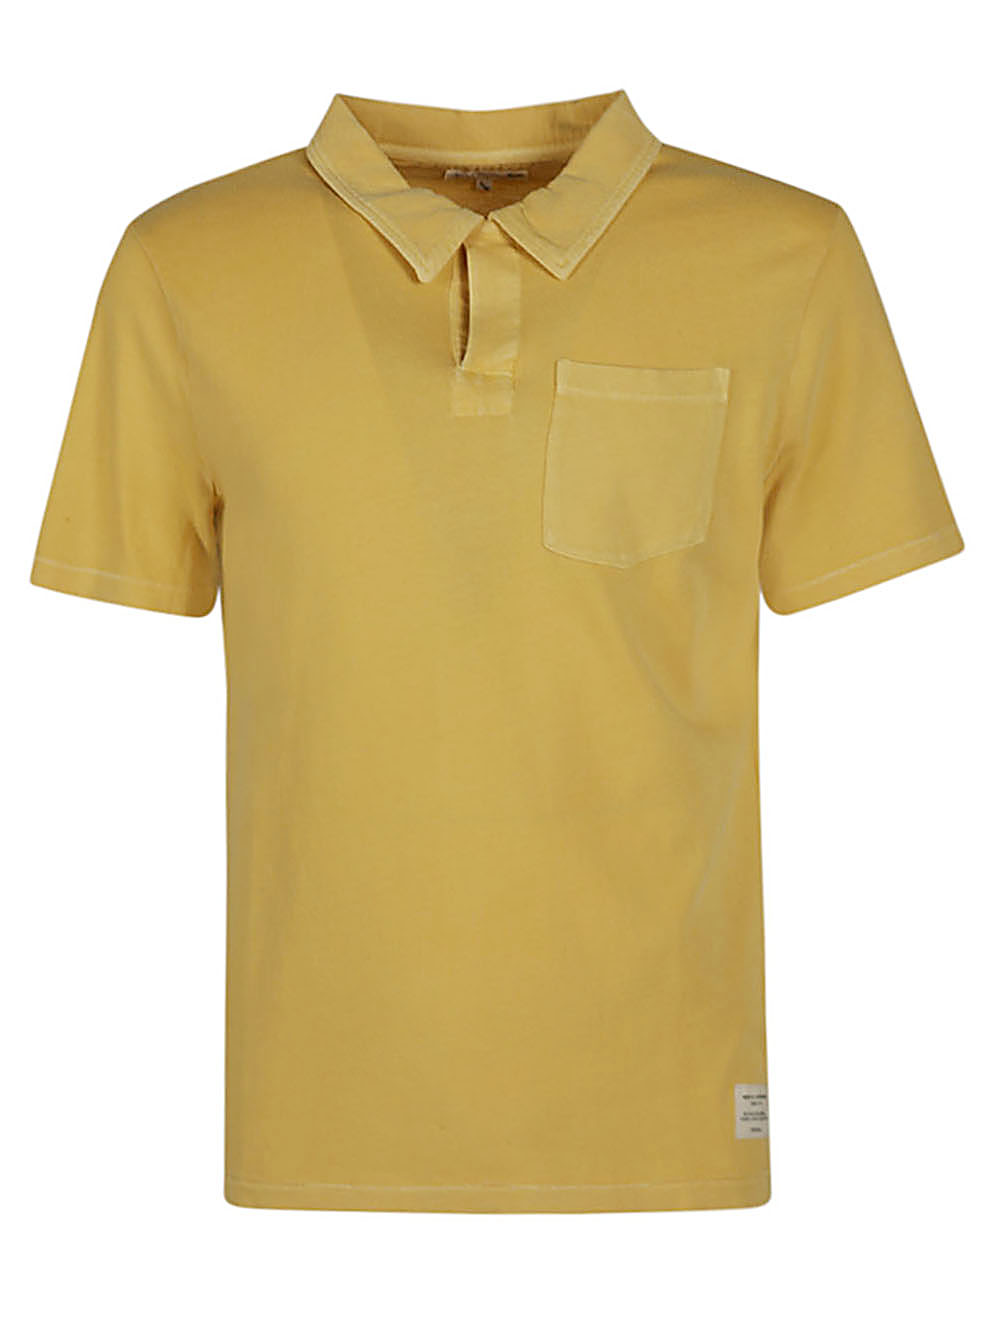 Merz b. schwanen MERZ B. SCHWANEN- Organic Cotton Polo Shirt